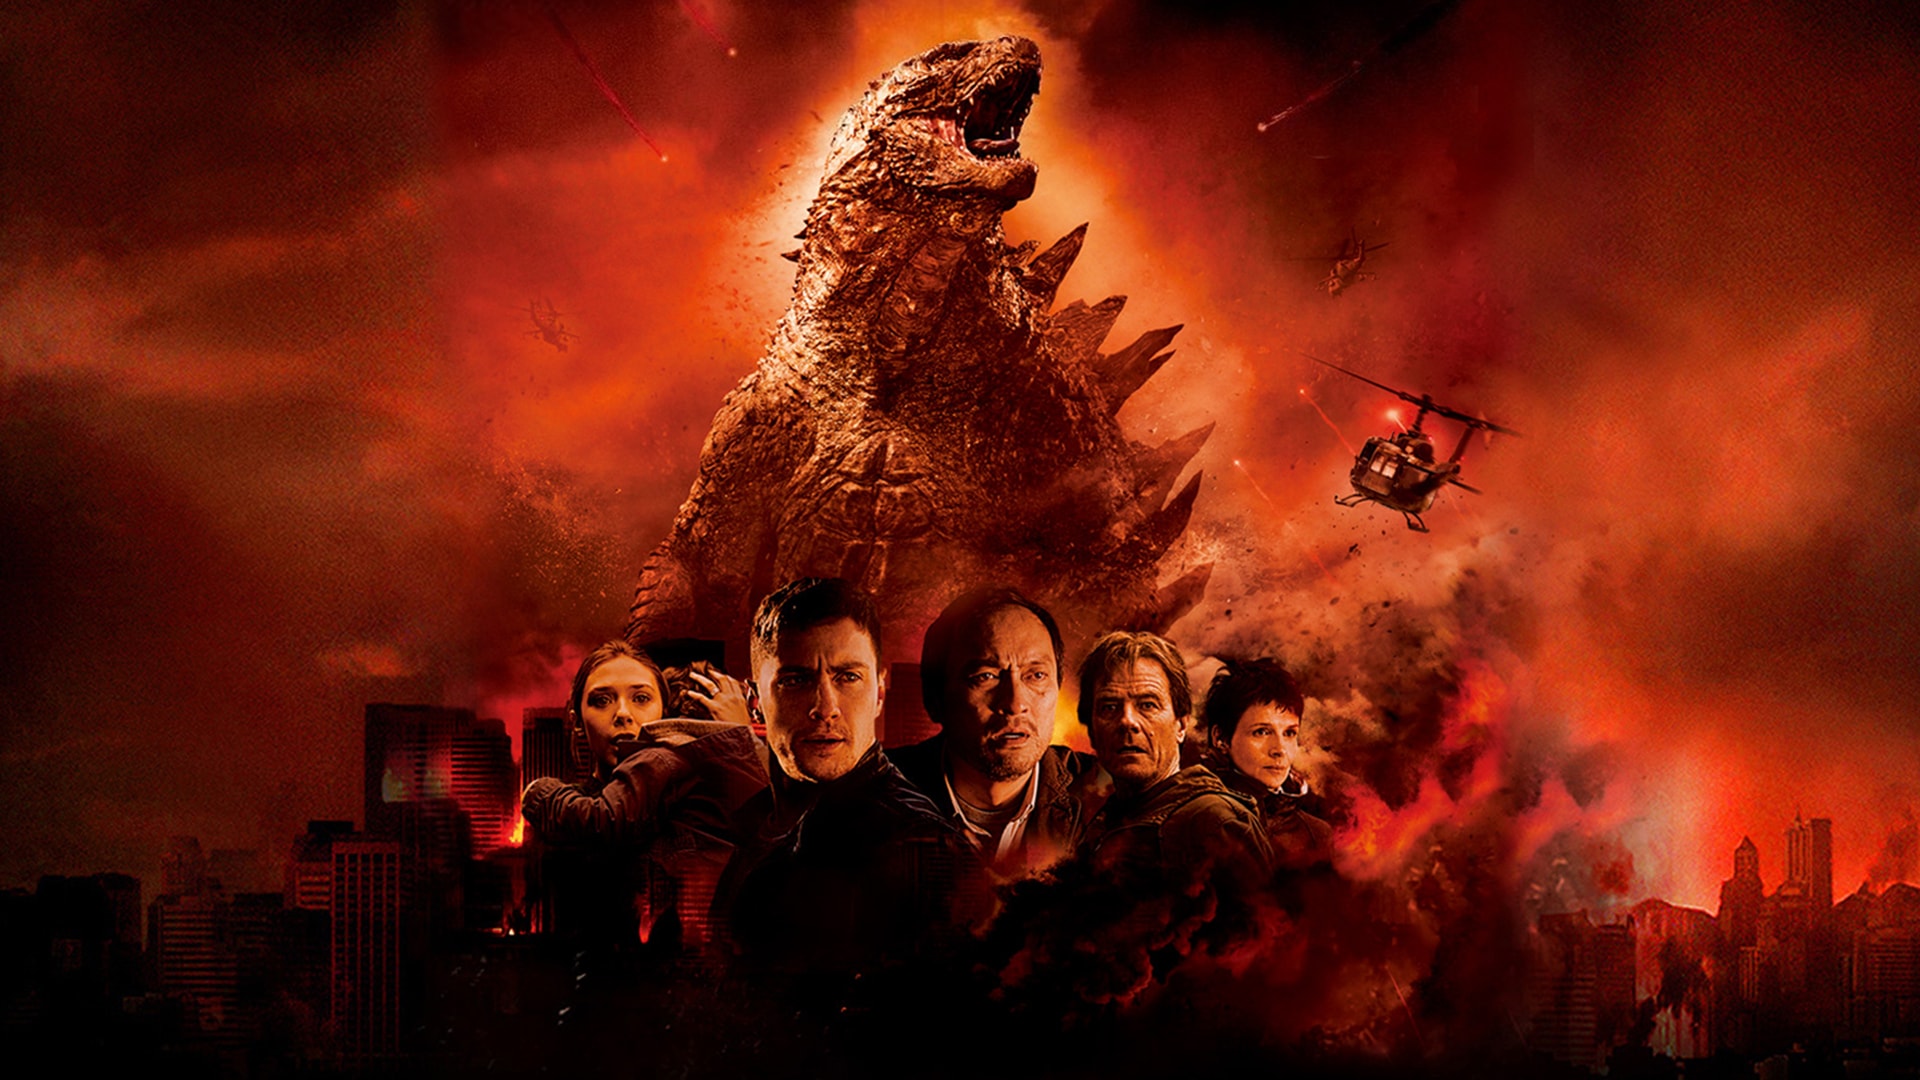 Godzilla 2014  Wallpaper by matheusGODZILLA on DeviantArt